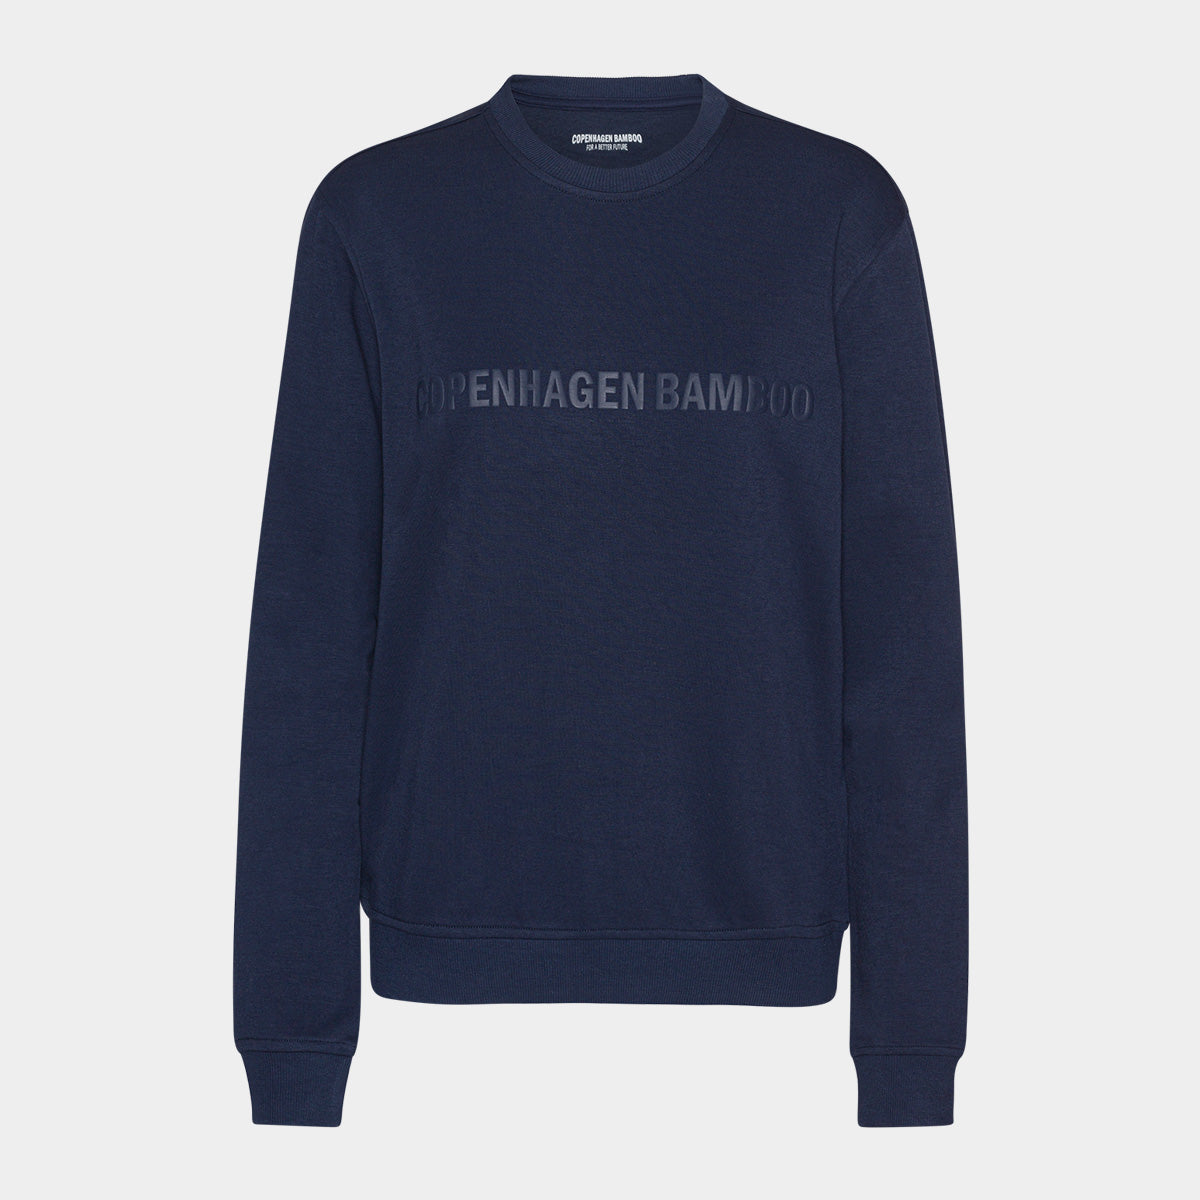 Se Navy bambus sweatshirt til mænd med logo fra Copenhagen Bamboo, XS hos Bambustøj.dk